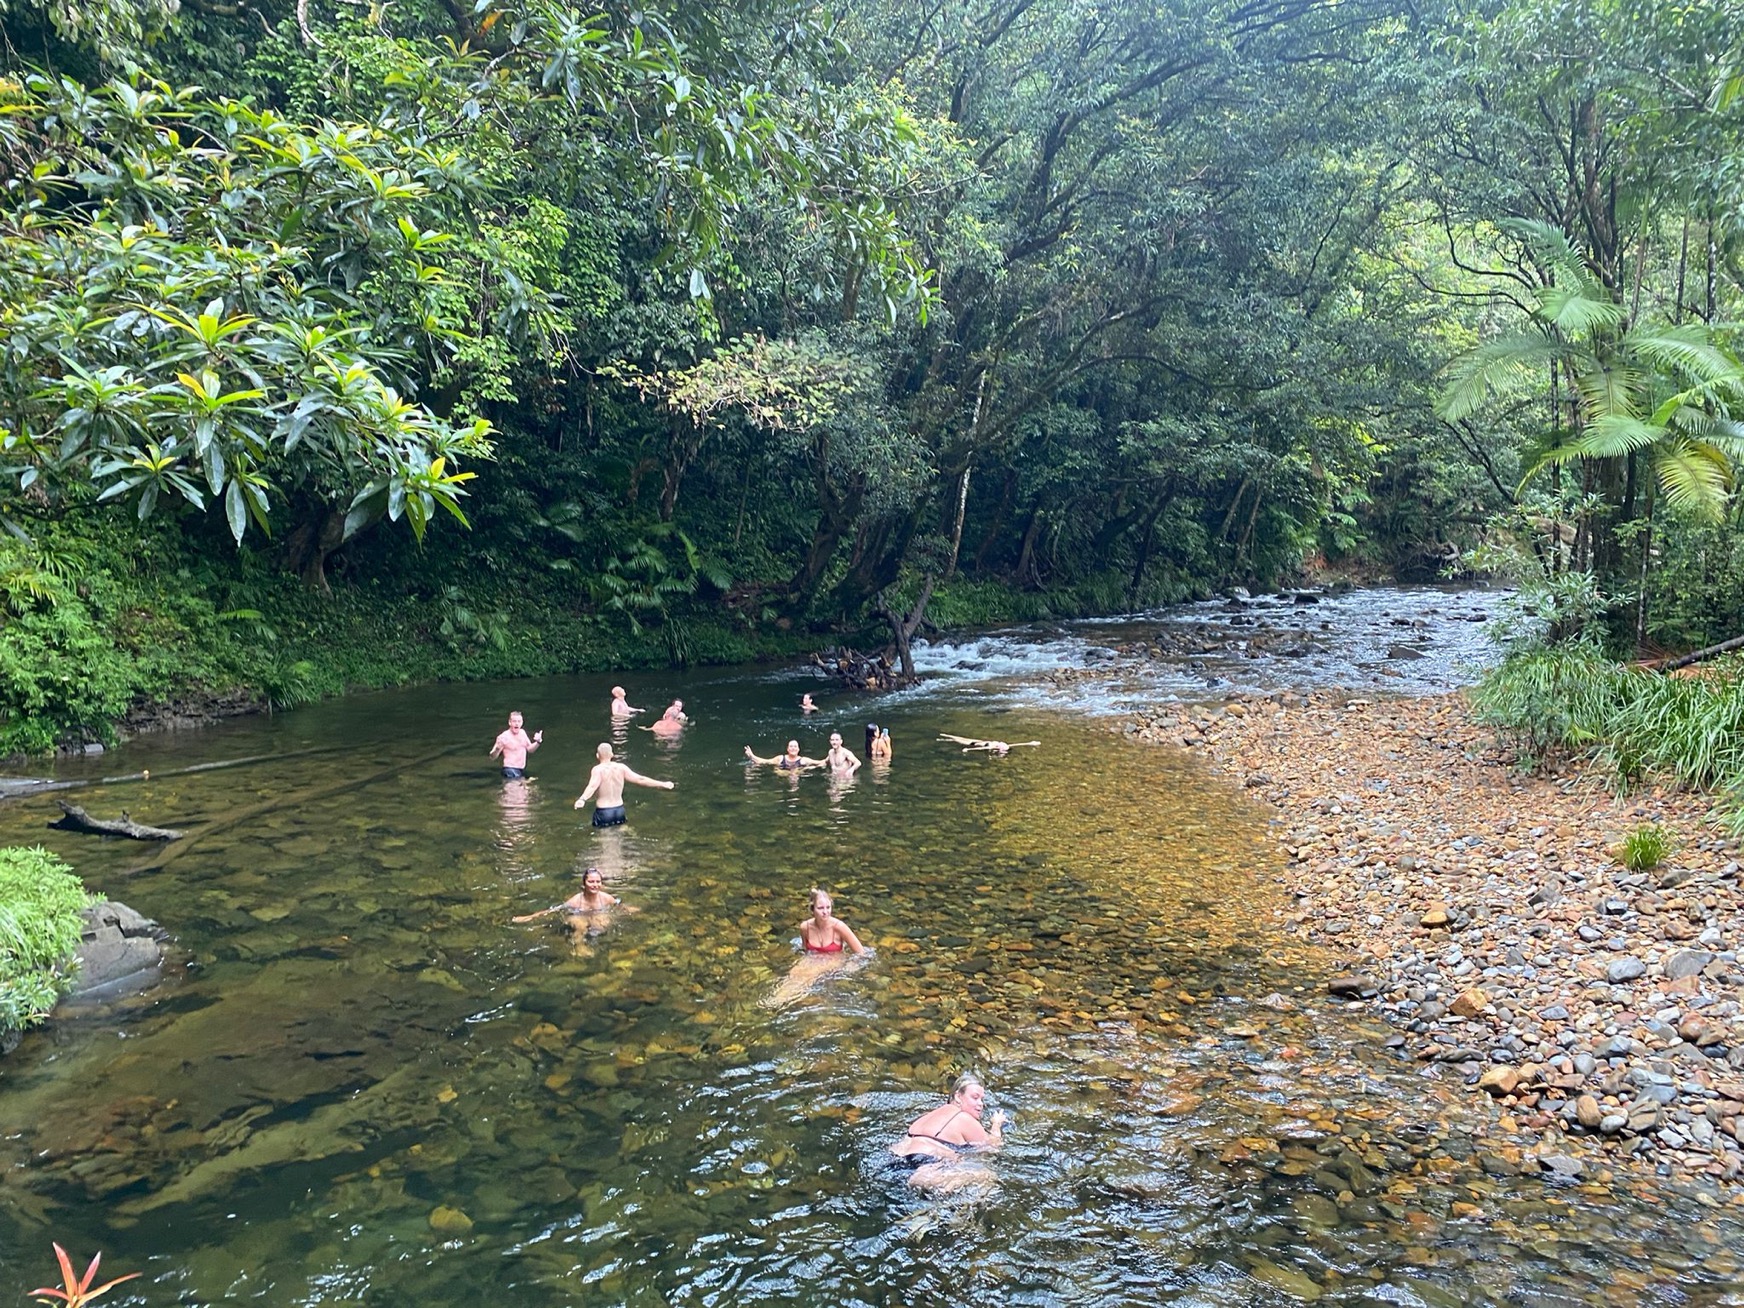 Team swim in a river